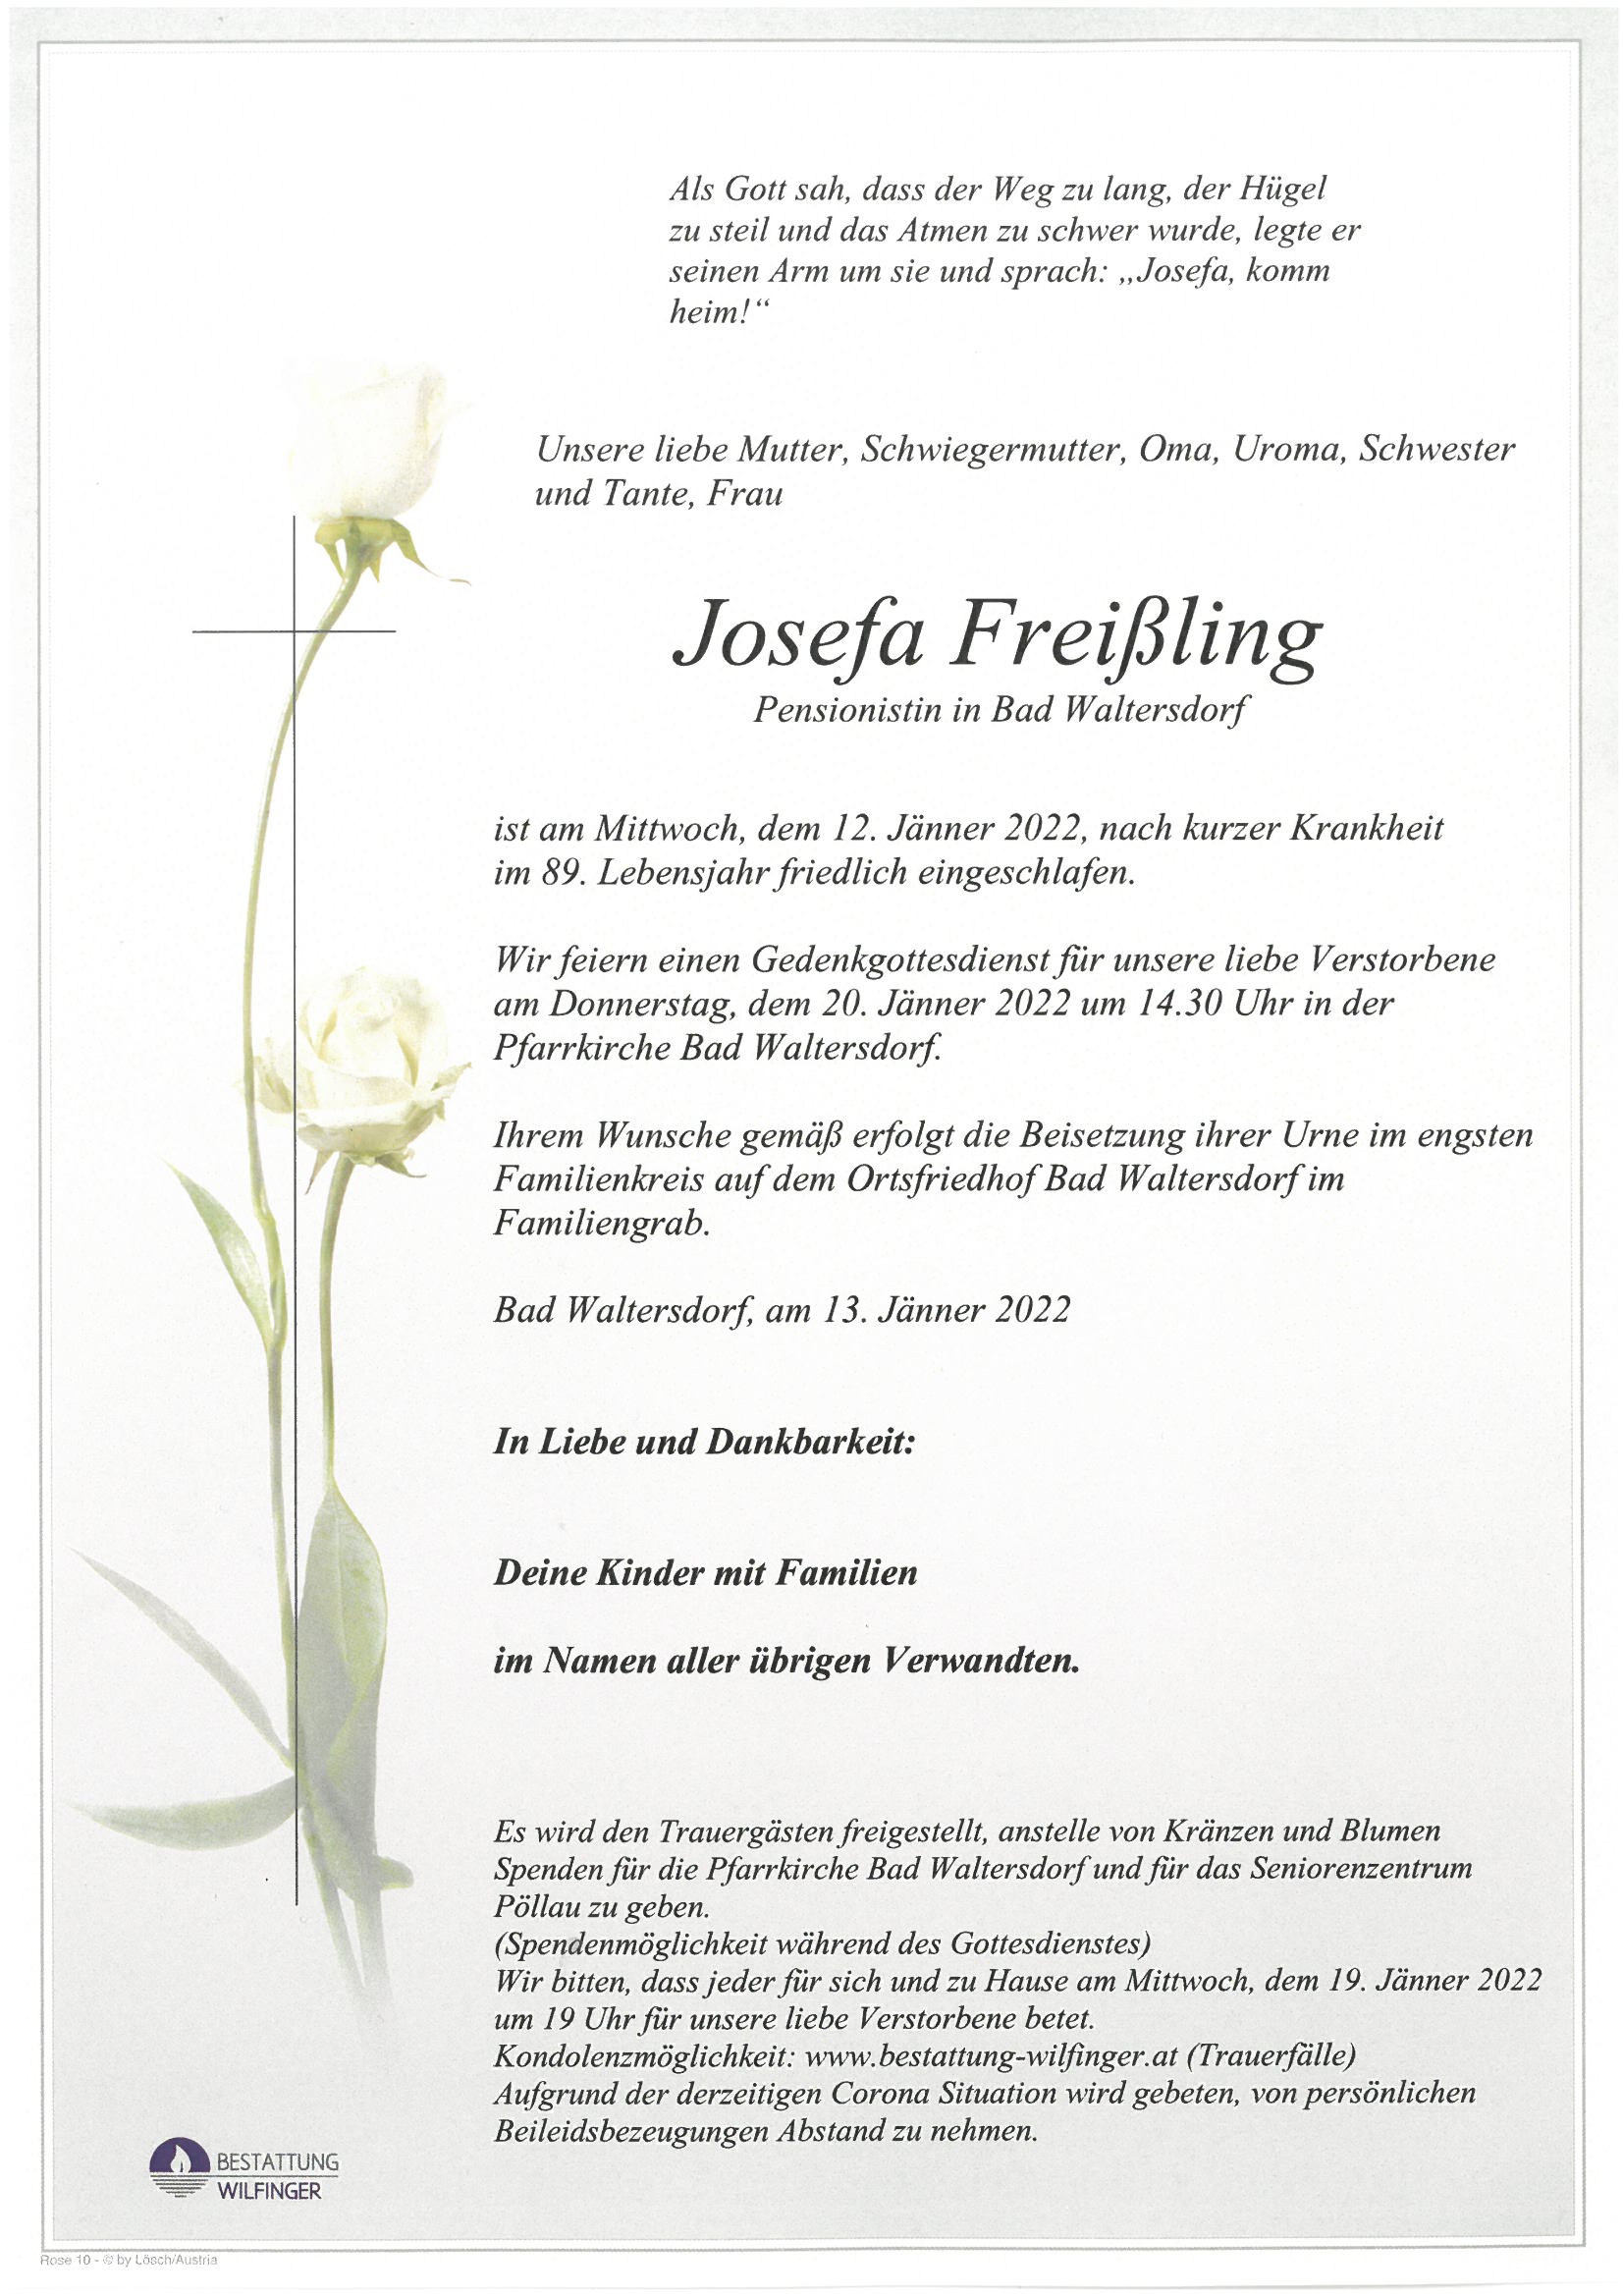 Josefa Freißling